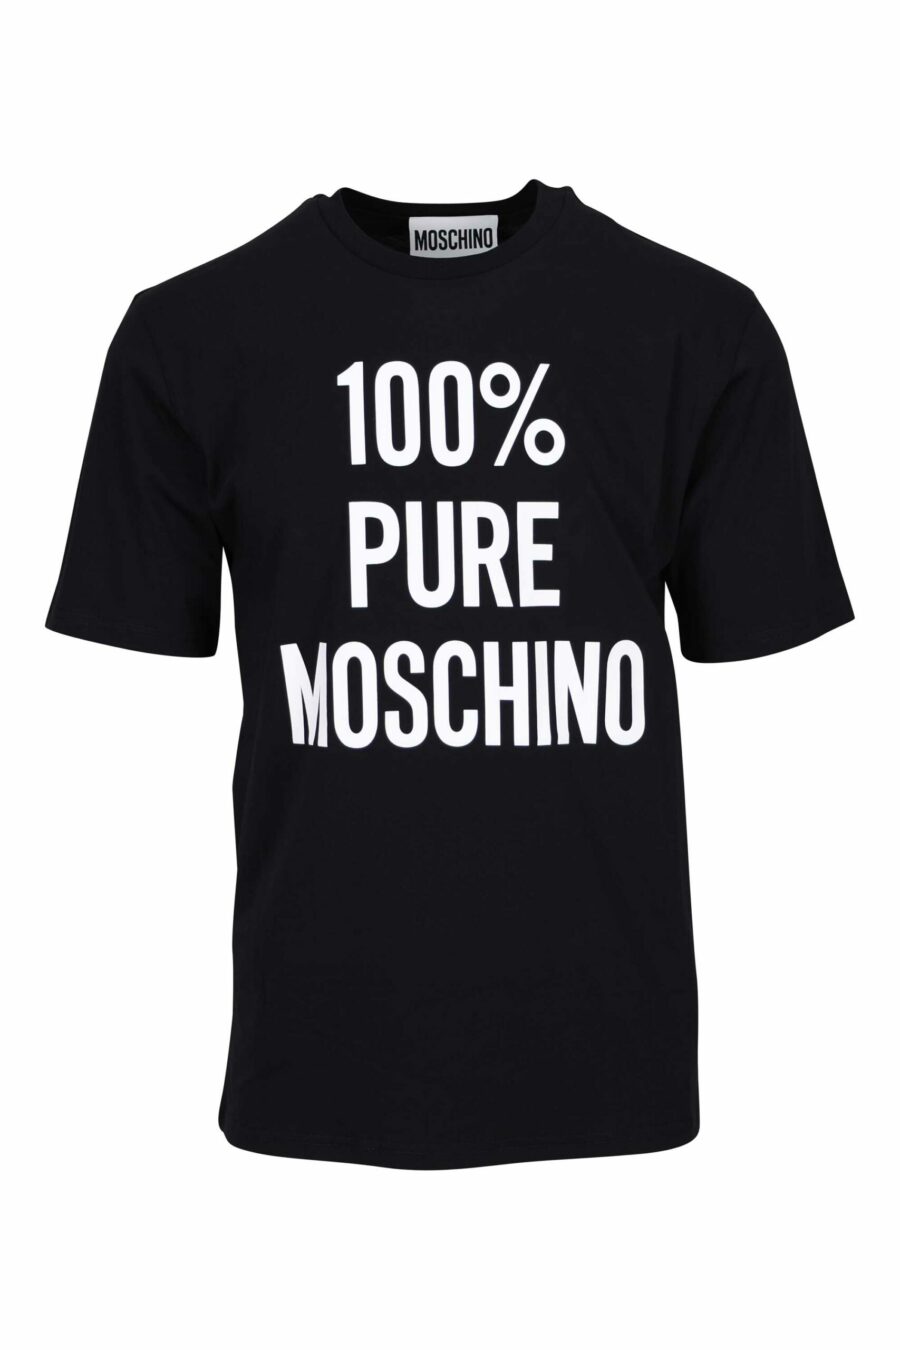 T-shirt noir en coton bio "100% pure moschino" - 667113765150 écaillé